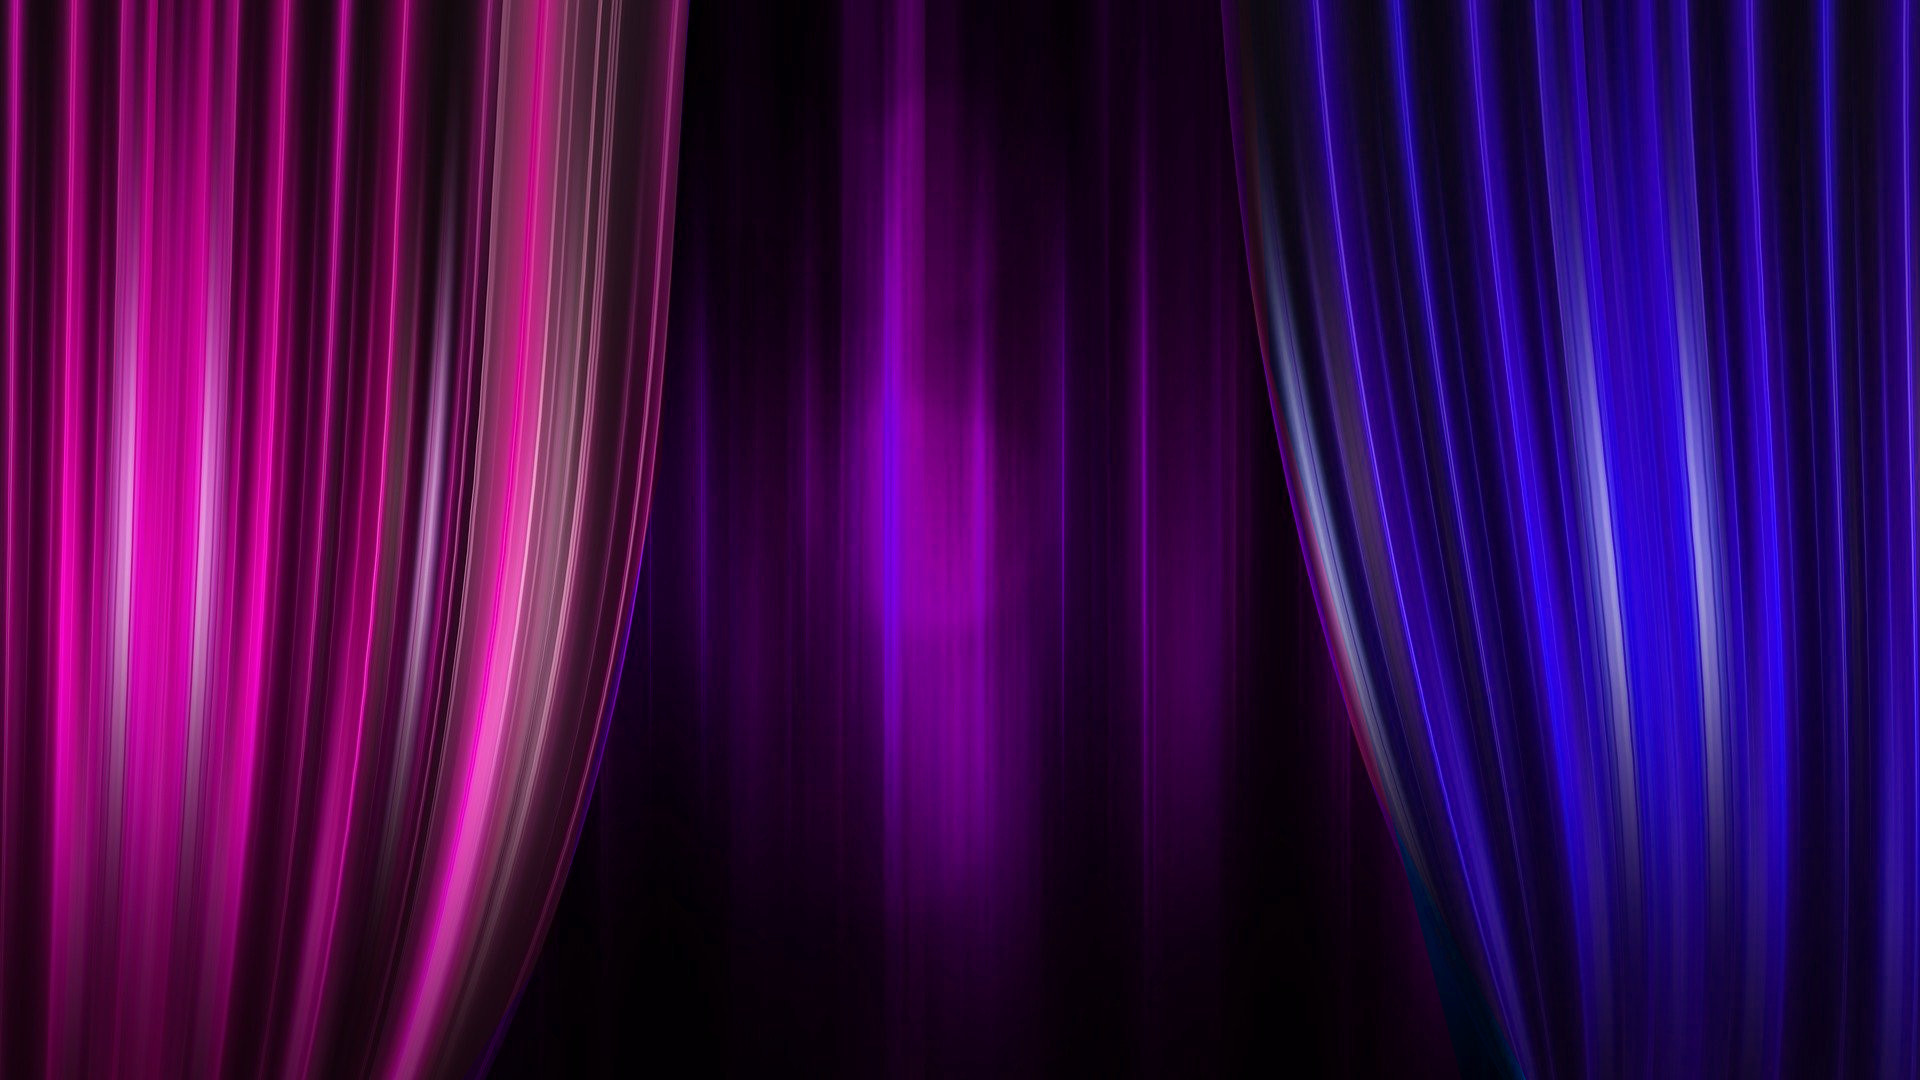 Grafik, die einen Theatervorhang in den Farben der bisexuellen Pride-Flagge zeigt: Pink, lila, blau.